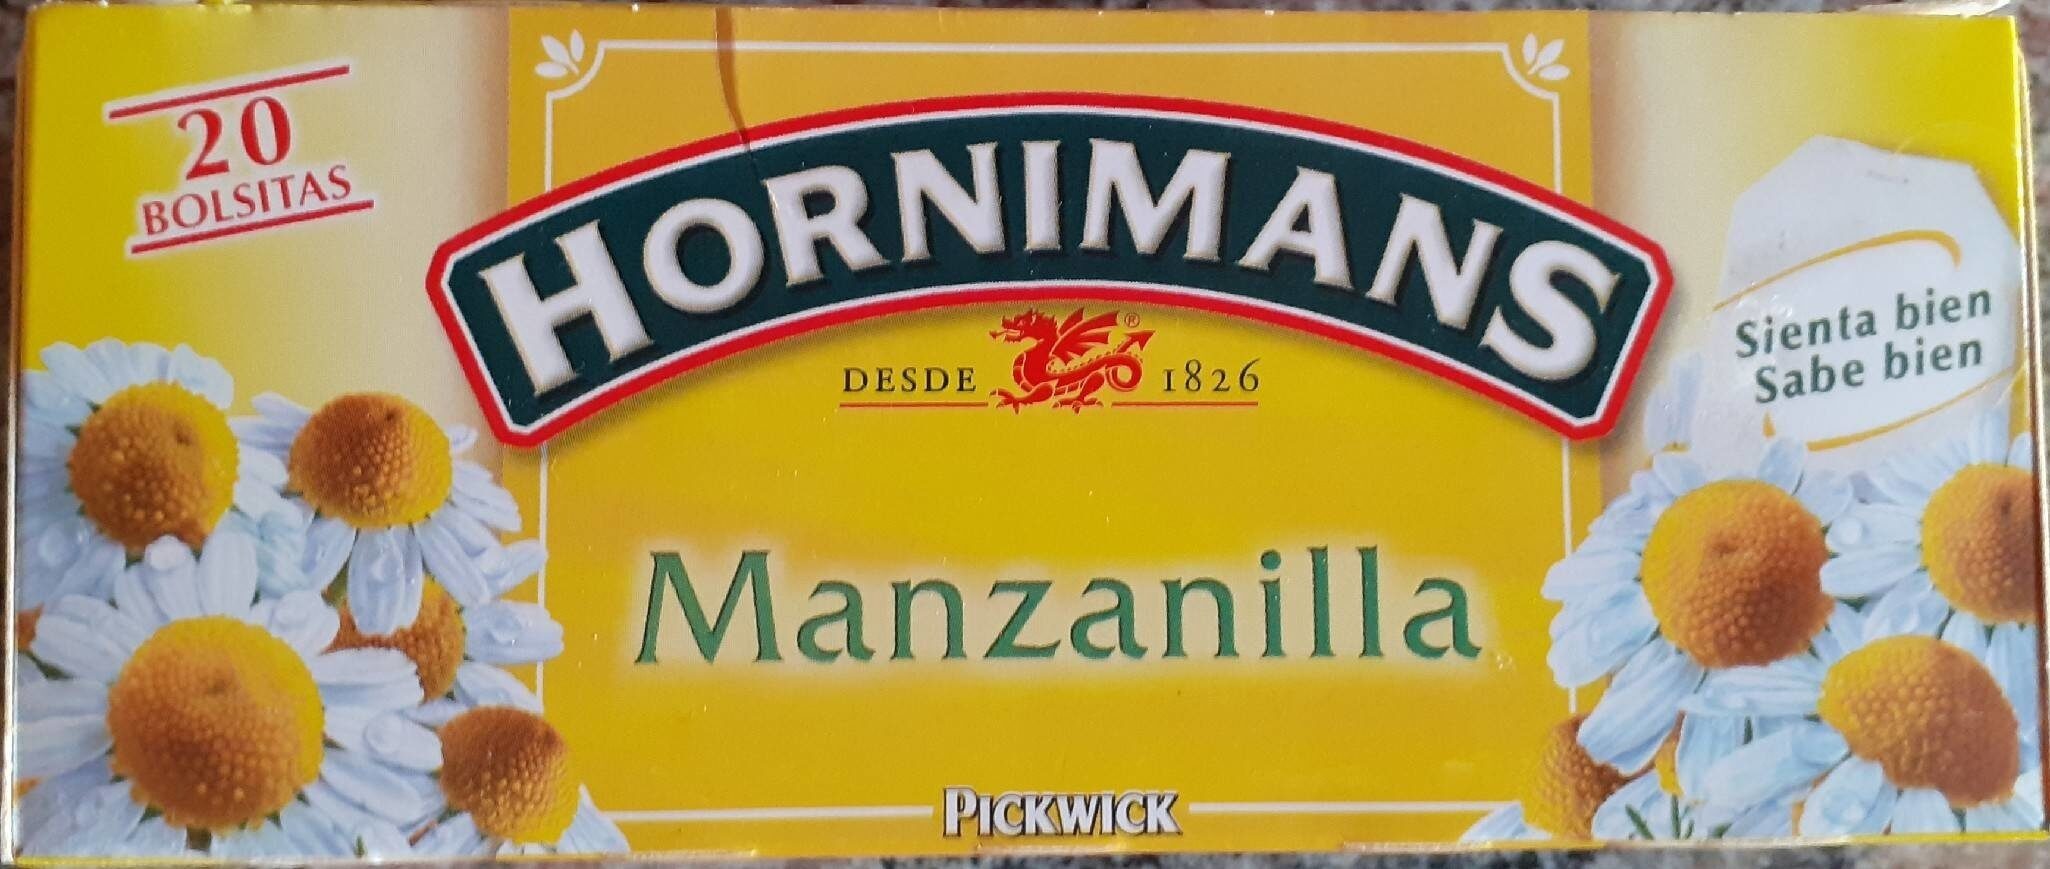 Manzanilla - Producte - es